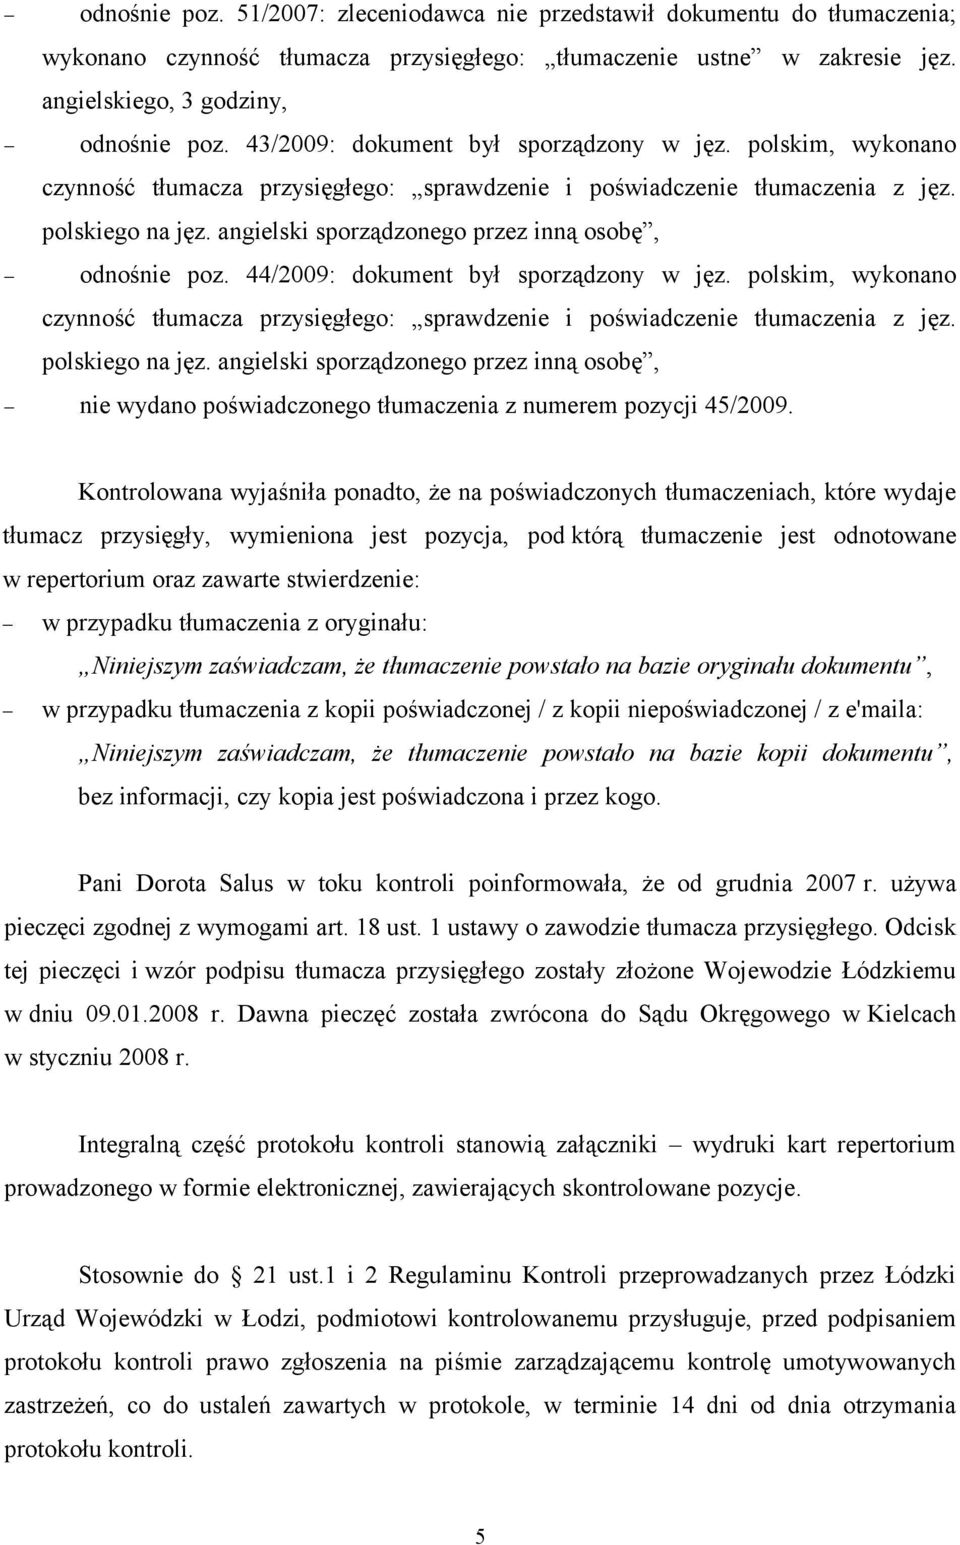 angielski sporządzonego przez inną osobę, odnośnie poz. 44/2009: dokument był sporządzony w jęz. polskim, wykonano czynność tłumacza przysięgłego: sprawdzenie i poświadczenie tłumaczenia z jęz.